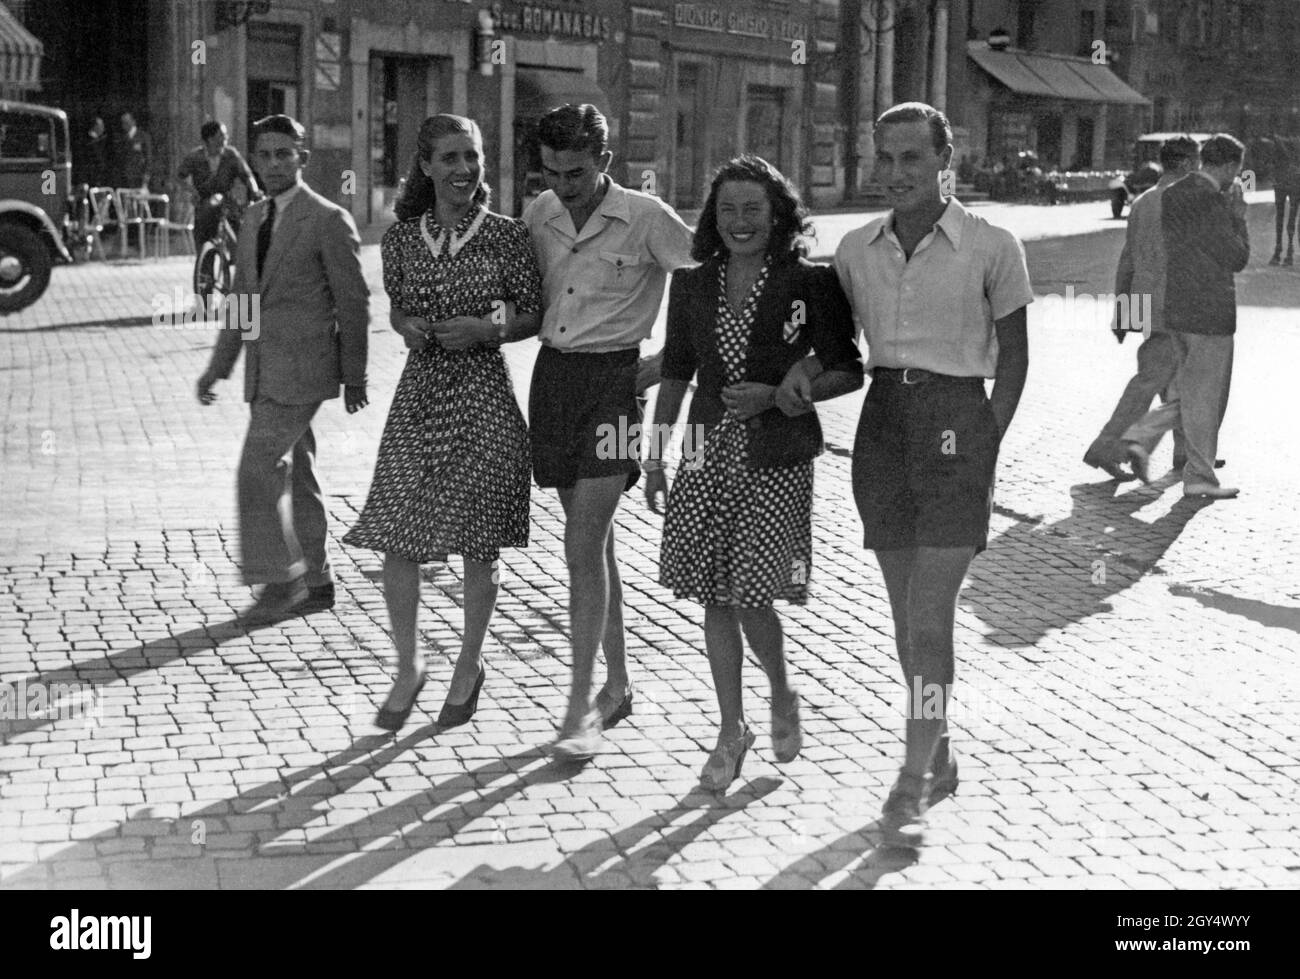 Nel 1940 fu data una nuova moda ai giovani italiani: Non si indossavano più abiti non essenziali come le cravatte. Si indossavano solo calzini corti e i ragazzi indossavano pantaloncini, come si vede nella foto, che probabilmente è stata presa a Roma. Questo era quello di salvare i tessili per l'economia di guerra. [traduzione automatizzata] Foto Stock